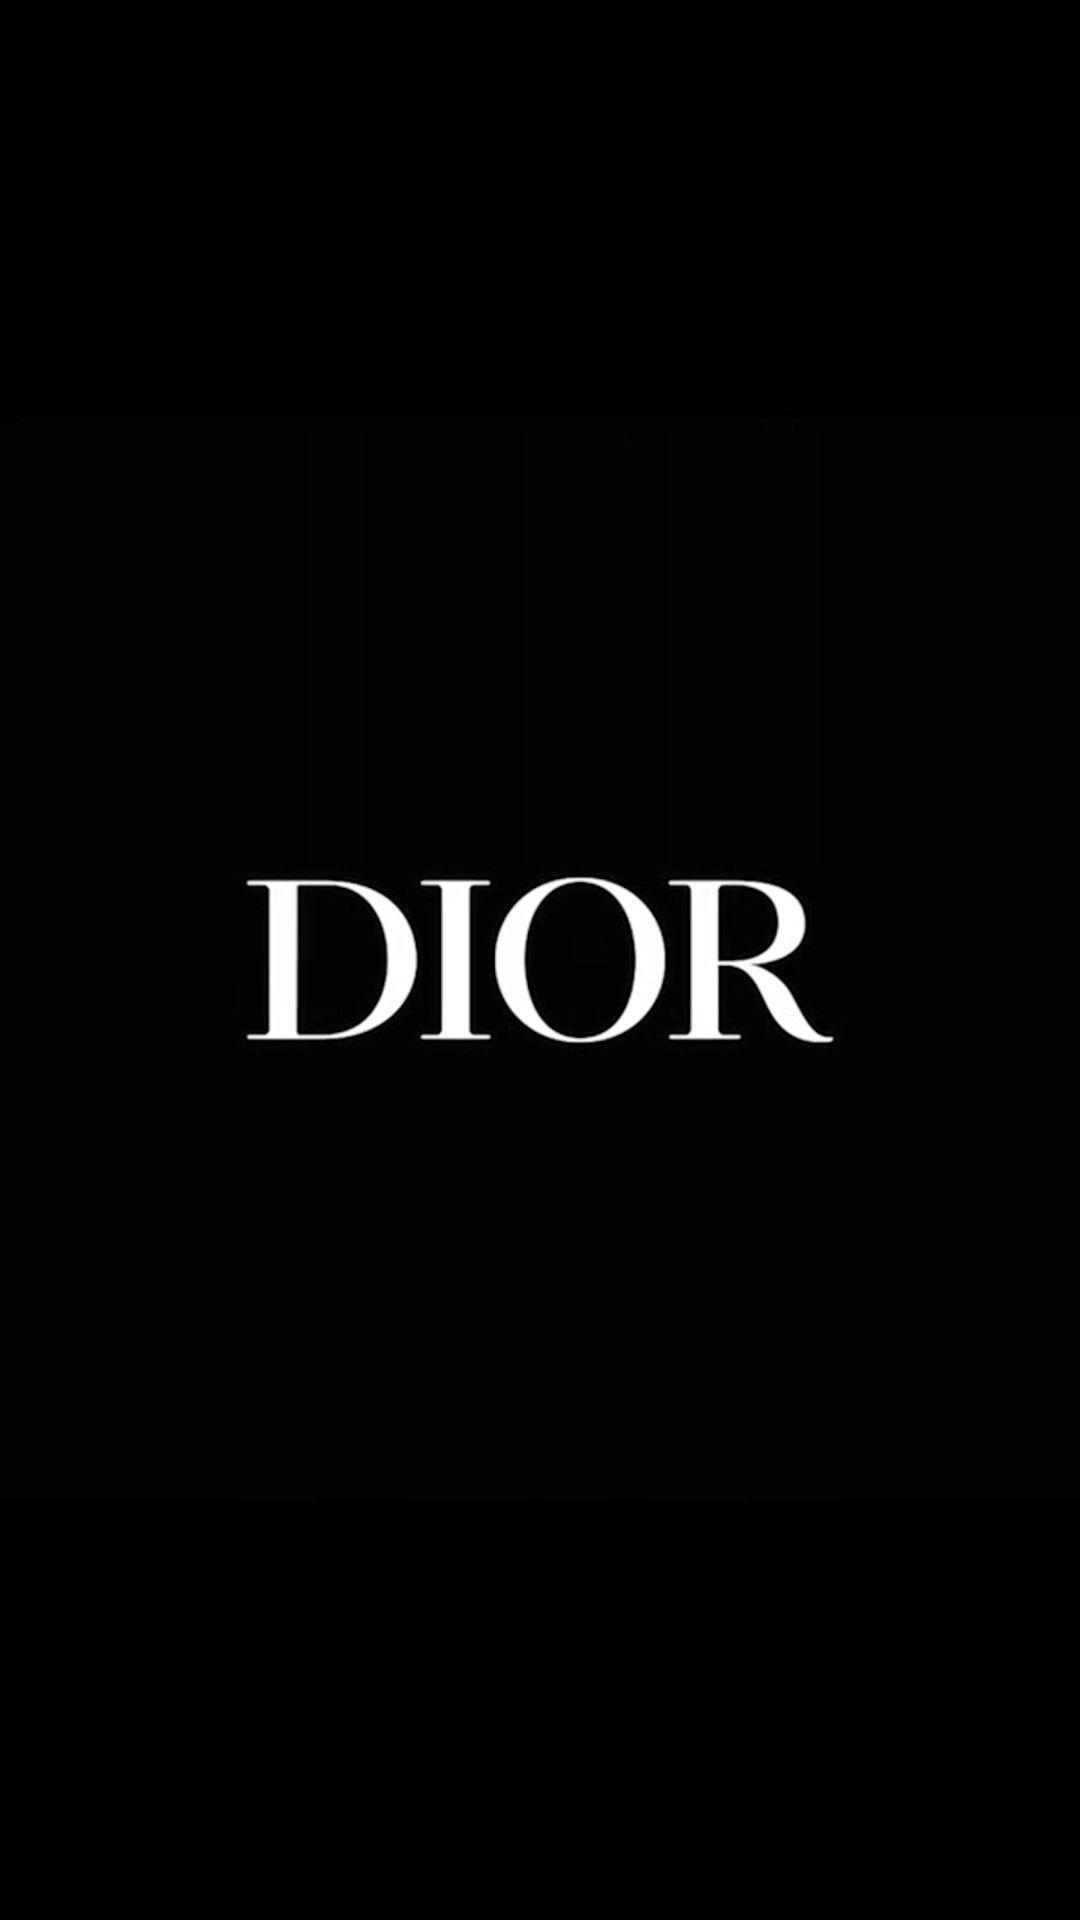 Hãy cùng xem những hình nền Dior cho iPhone này! Sự thật là những bức ảnh này cực kỳ đẹp và sẽ khiến cho chiếc điện thoại của bạn trở nên độc đáo hơn.